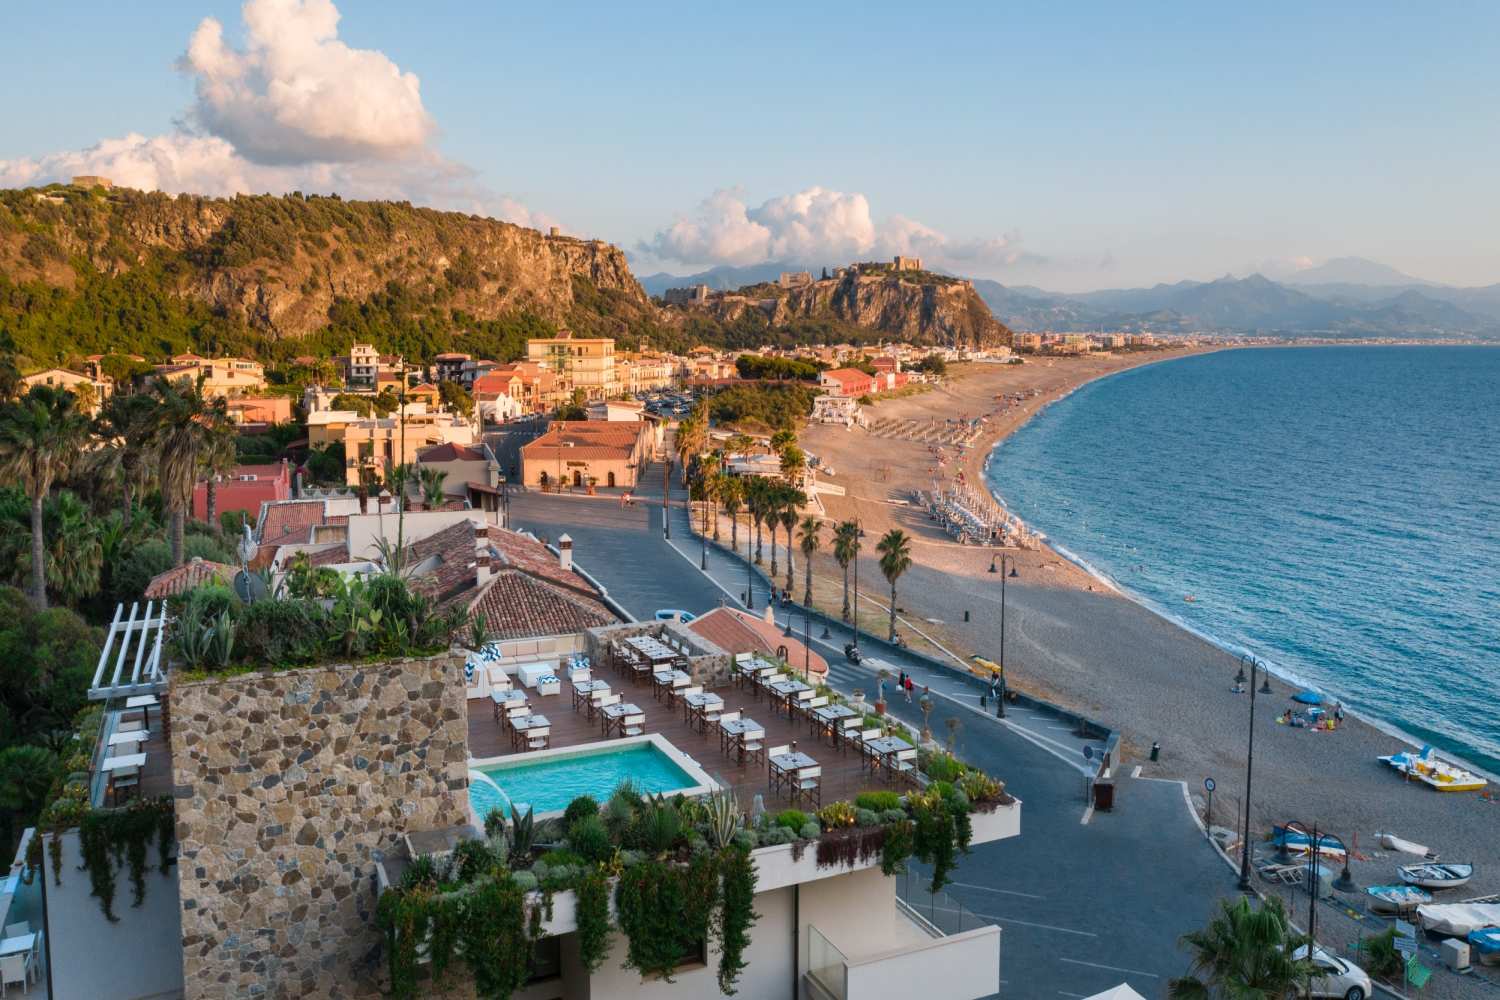 Ngonia Bay Hotel Milazzo, Sicily - Italy